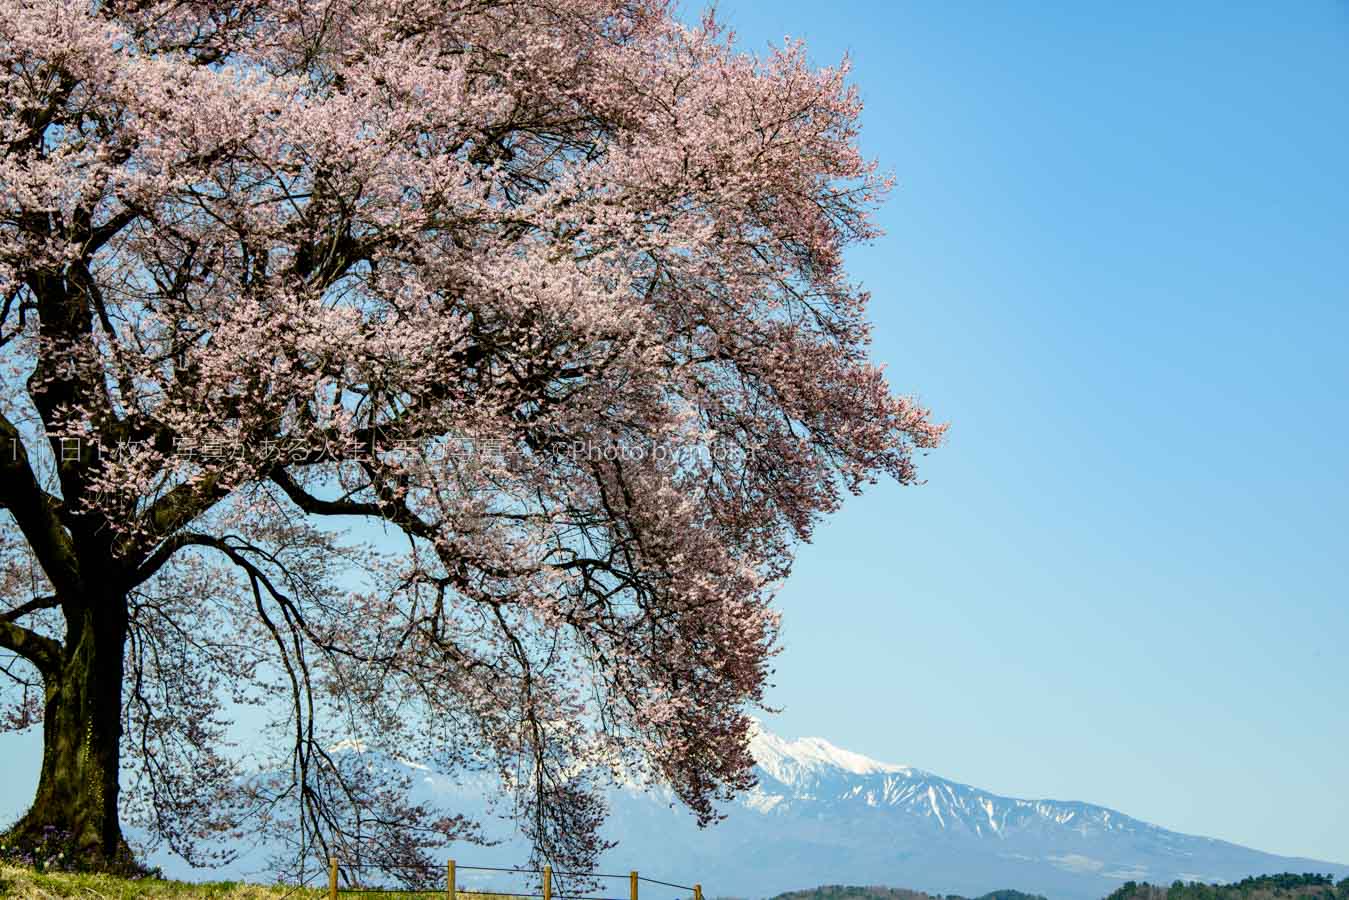 【風景写真】今年見たい桜のある風景